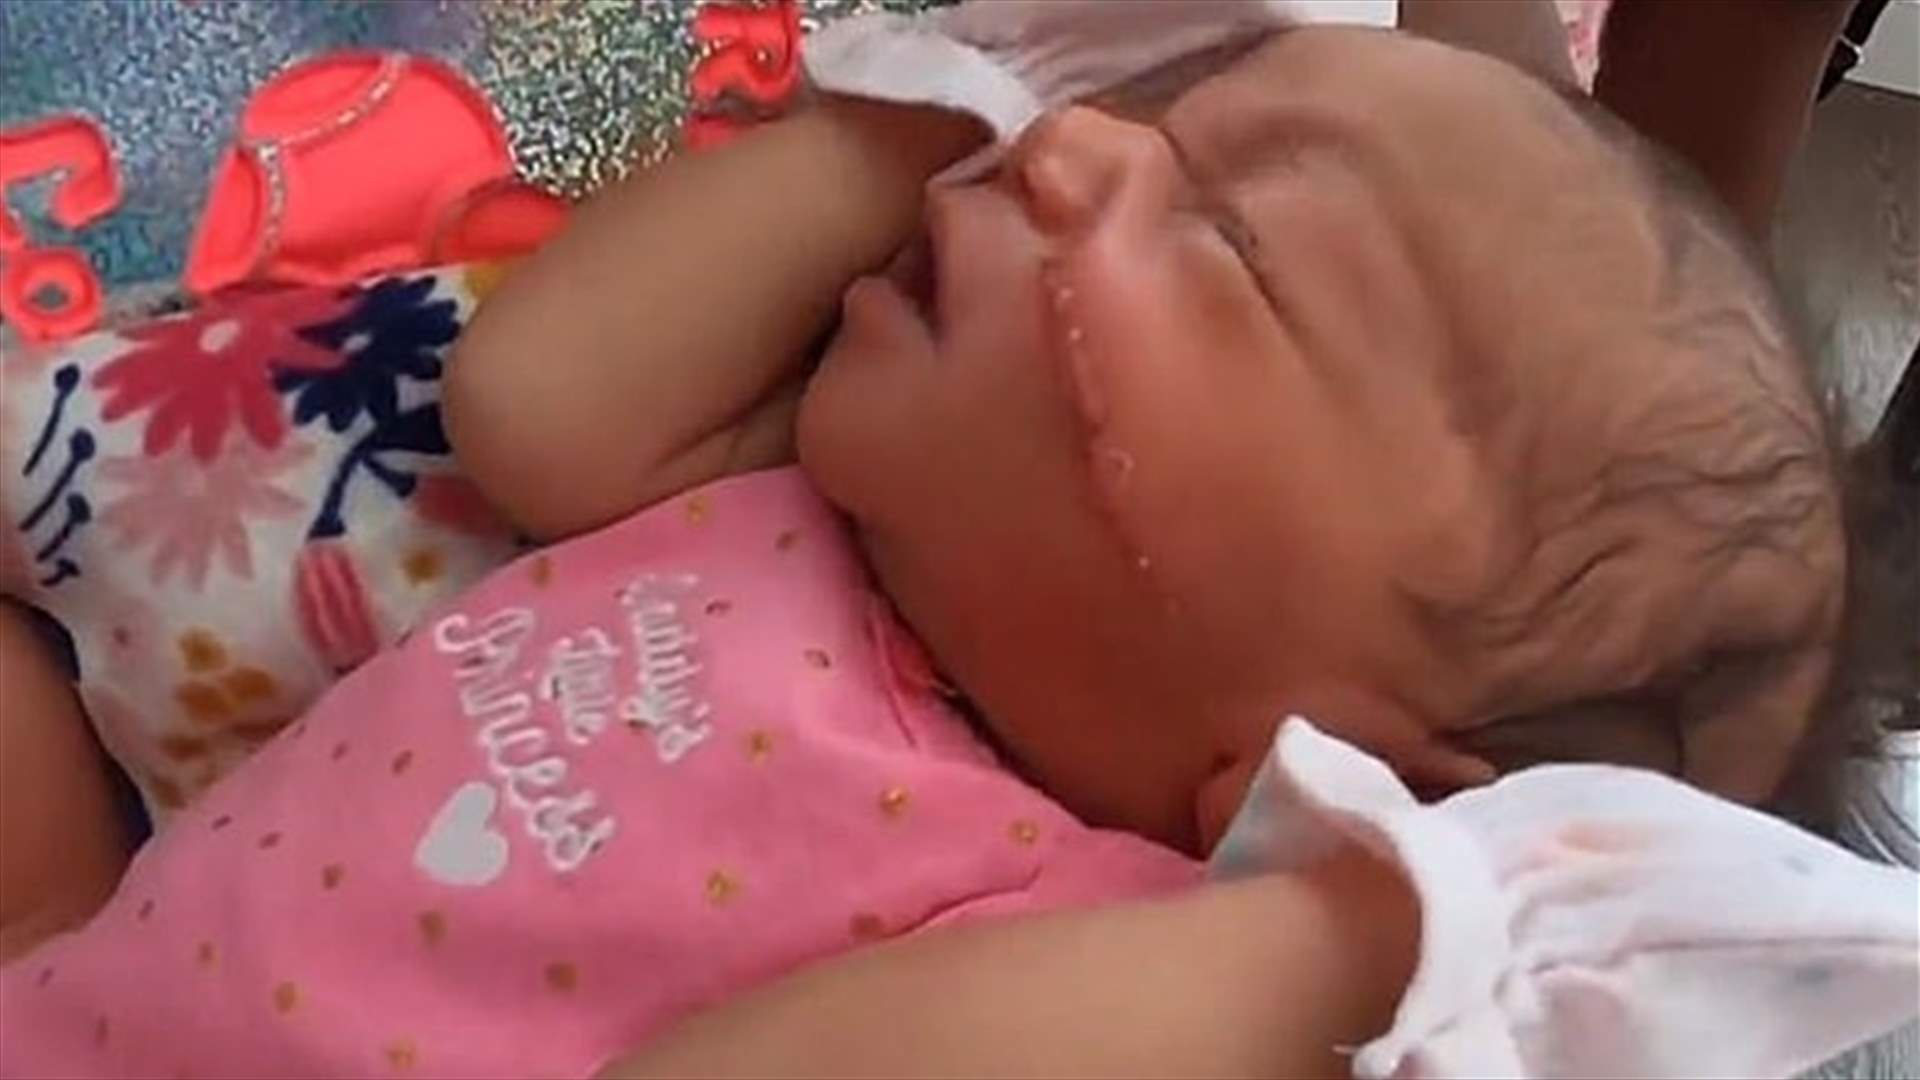 خطأ غير مألوف... ولادة قيصرية طارئة تسبب جرحاً كبيراً في وجه طفلة (فيديو)